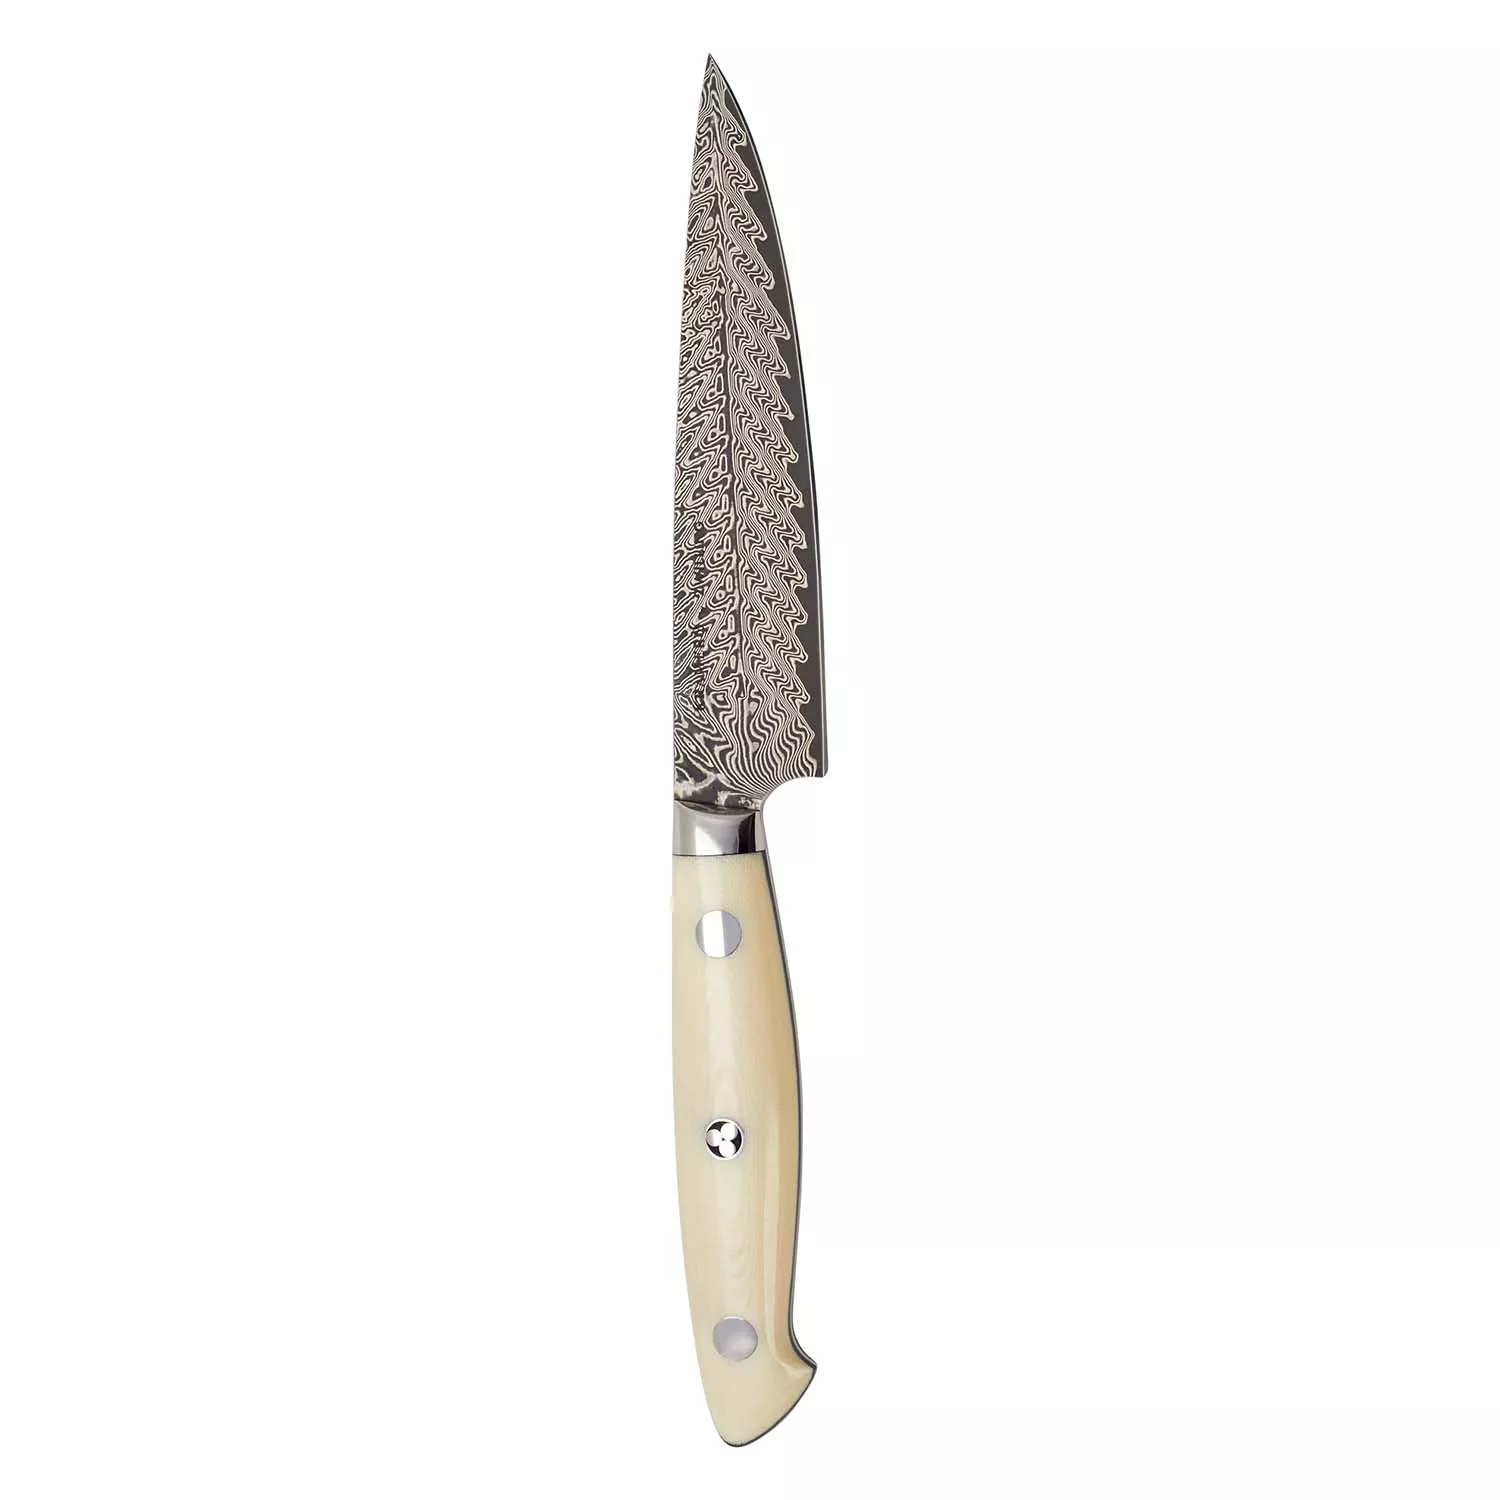 3.5 inch Paring Knife|Gunter Wilhelm